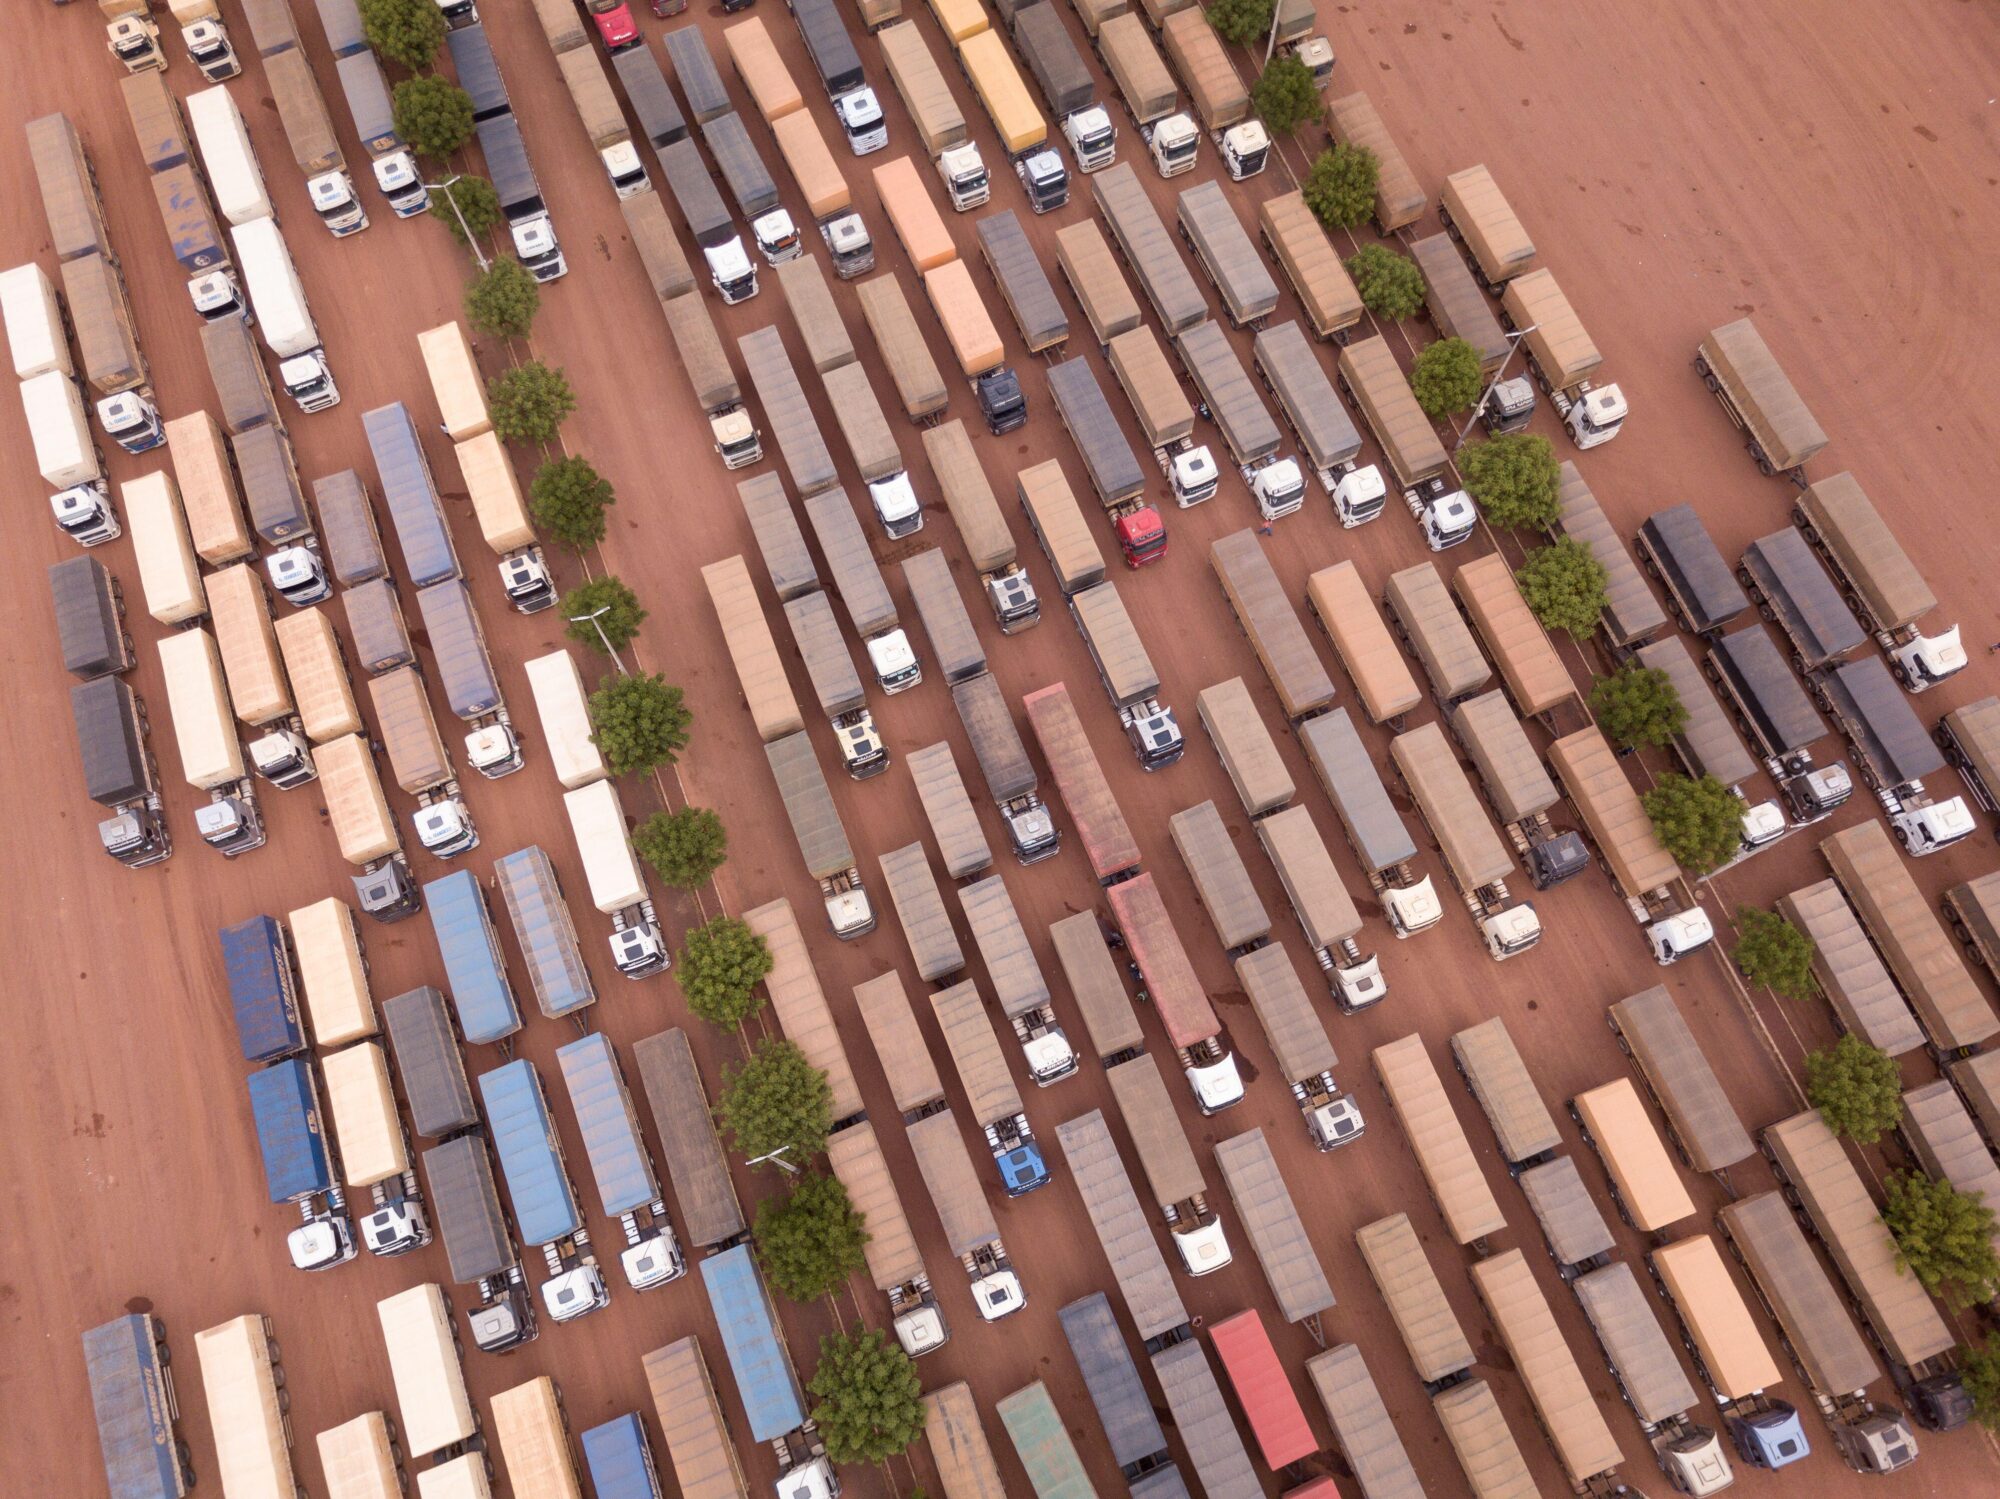 <p>Fila de camiones cargados de soja en la BR-163 en Pará, Brasil. La Amazonía juega un papel importante para China por su comercio agrícola y su rol en el control del calentamiento global (Imagen: Paralaxis / Alamy)</p>